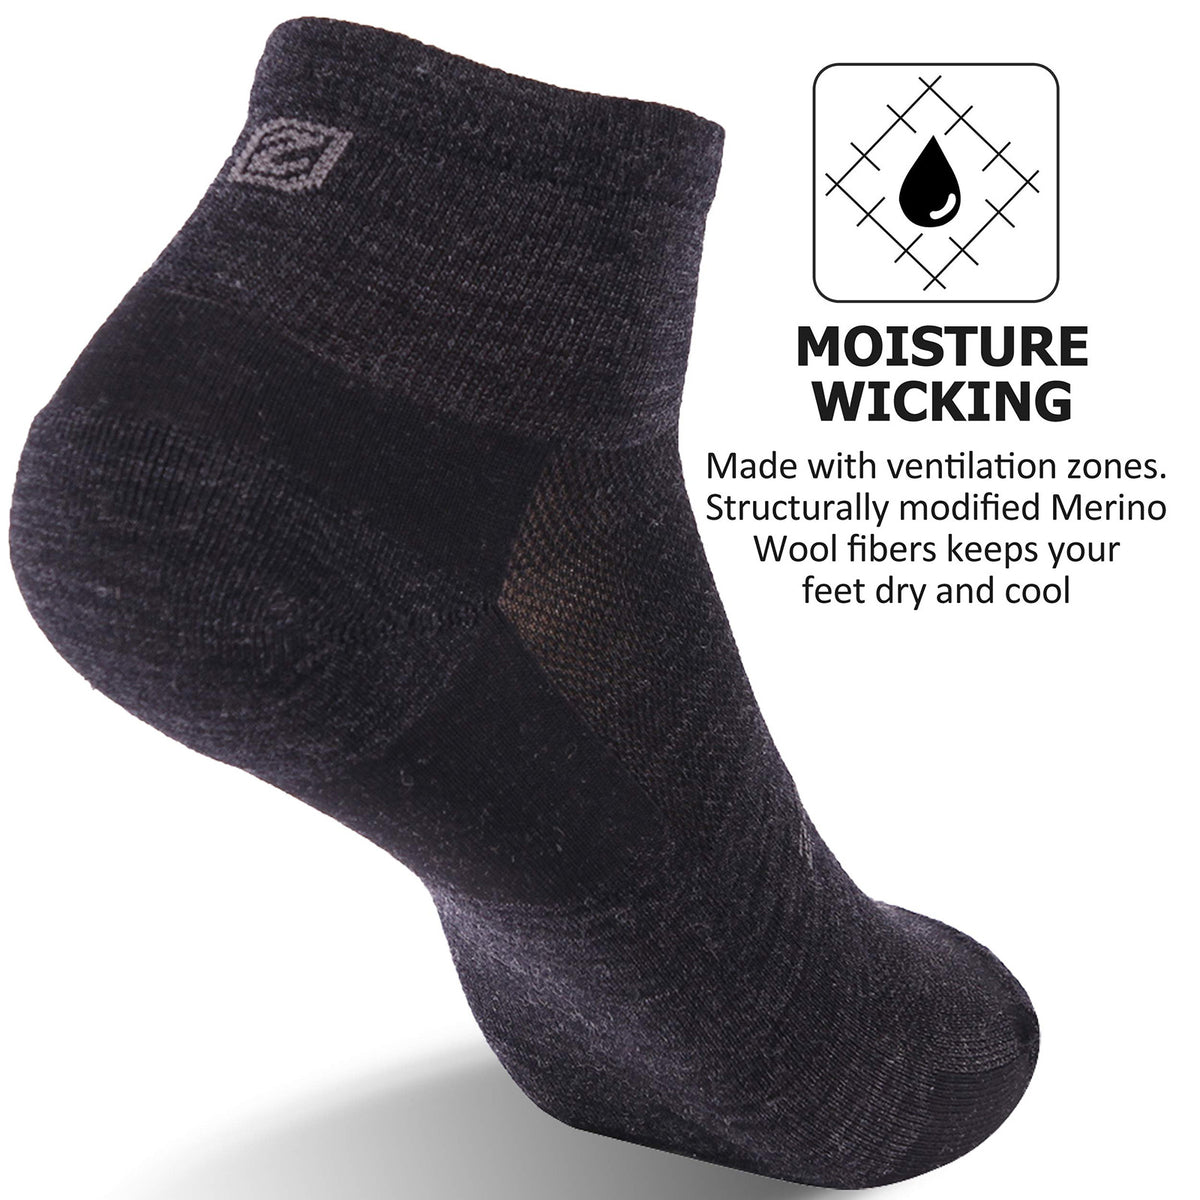 Buy Thermal Merino Wool Socks, ZEALWOOD Premium large Wool Crew